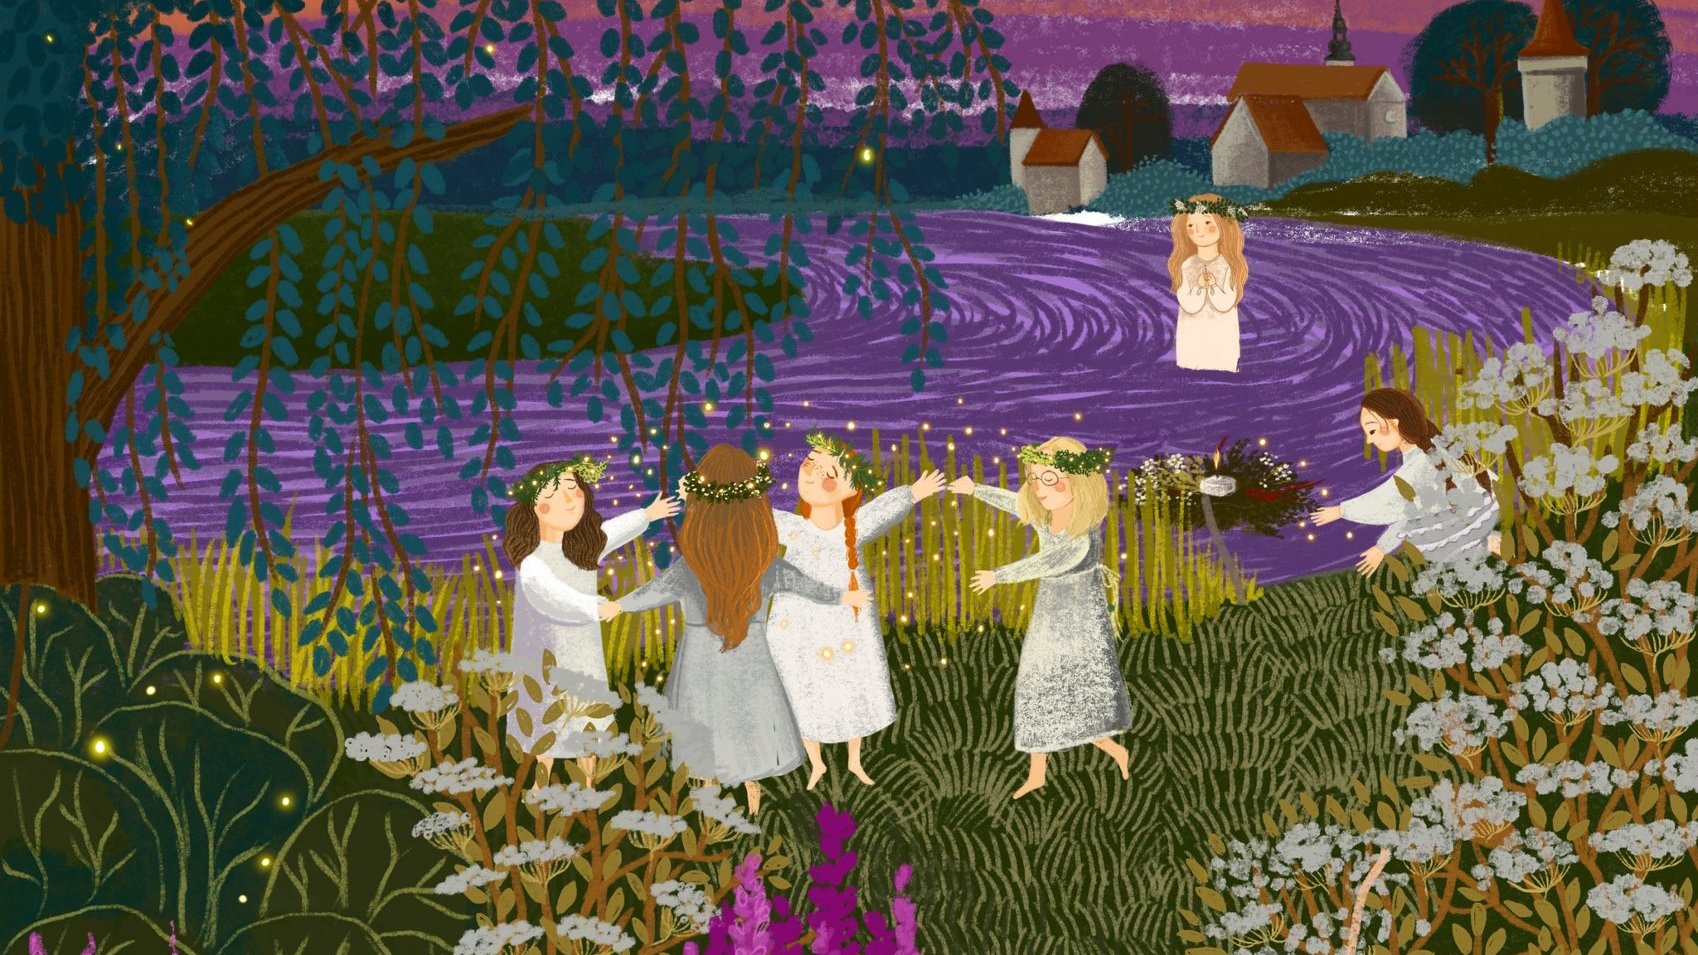 Obraz przedstawia cztery tańczące dziewczynki w białych sukienkach i wiankach na głowie, za nimi przygląda im się kobieta w jeziorze w takim samym stroju, z boku inna kobieta zbiera kwiatki